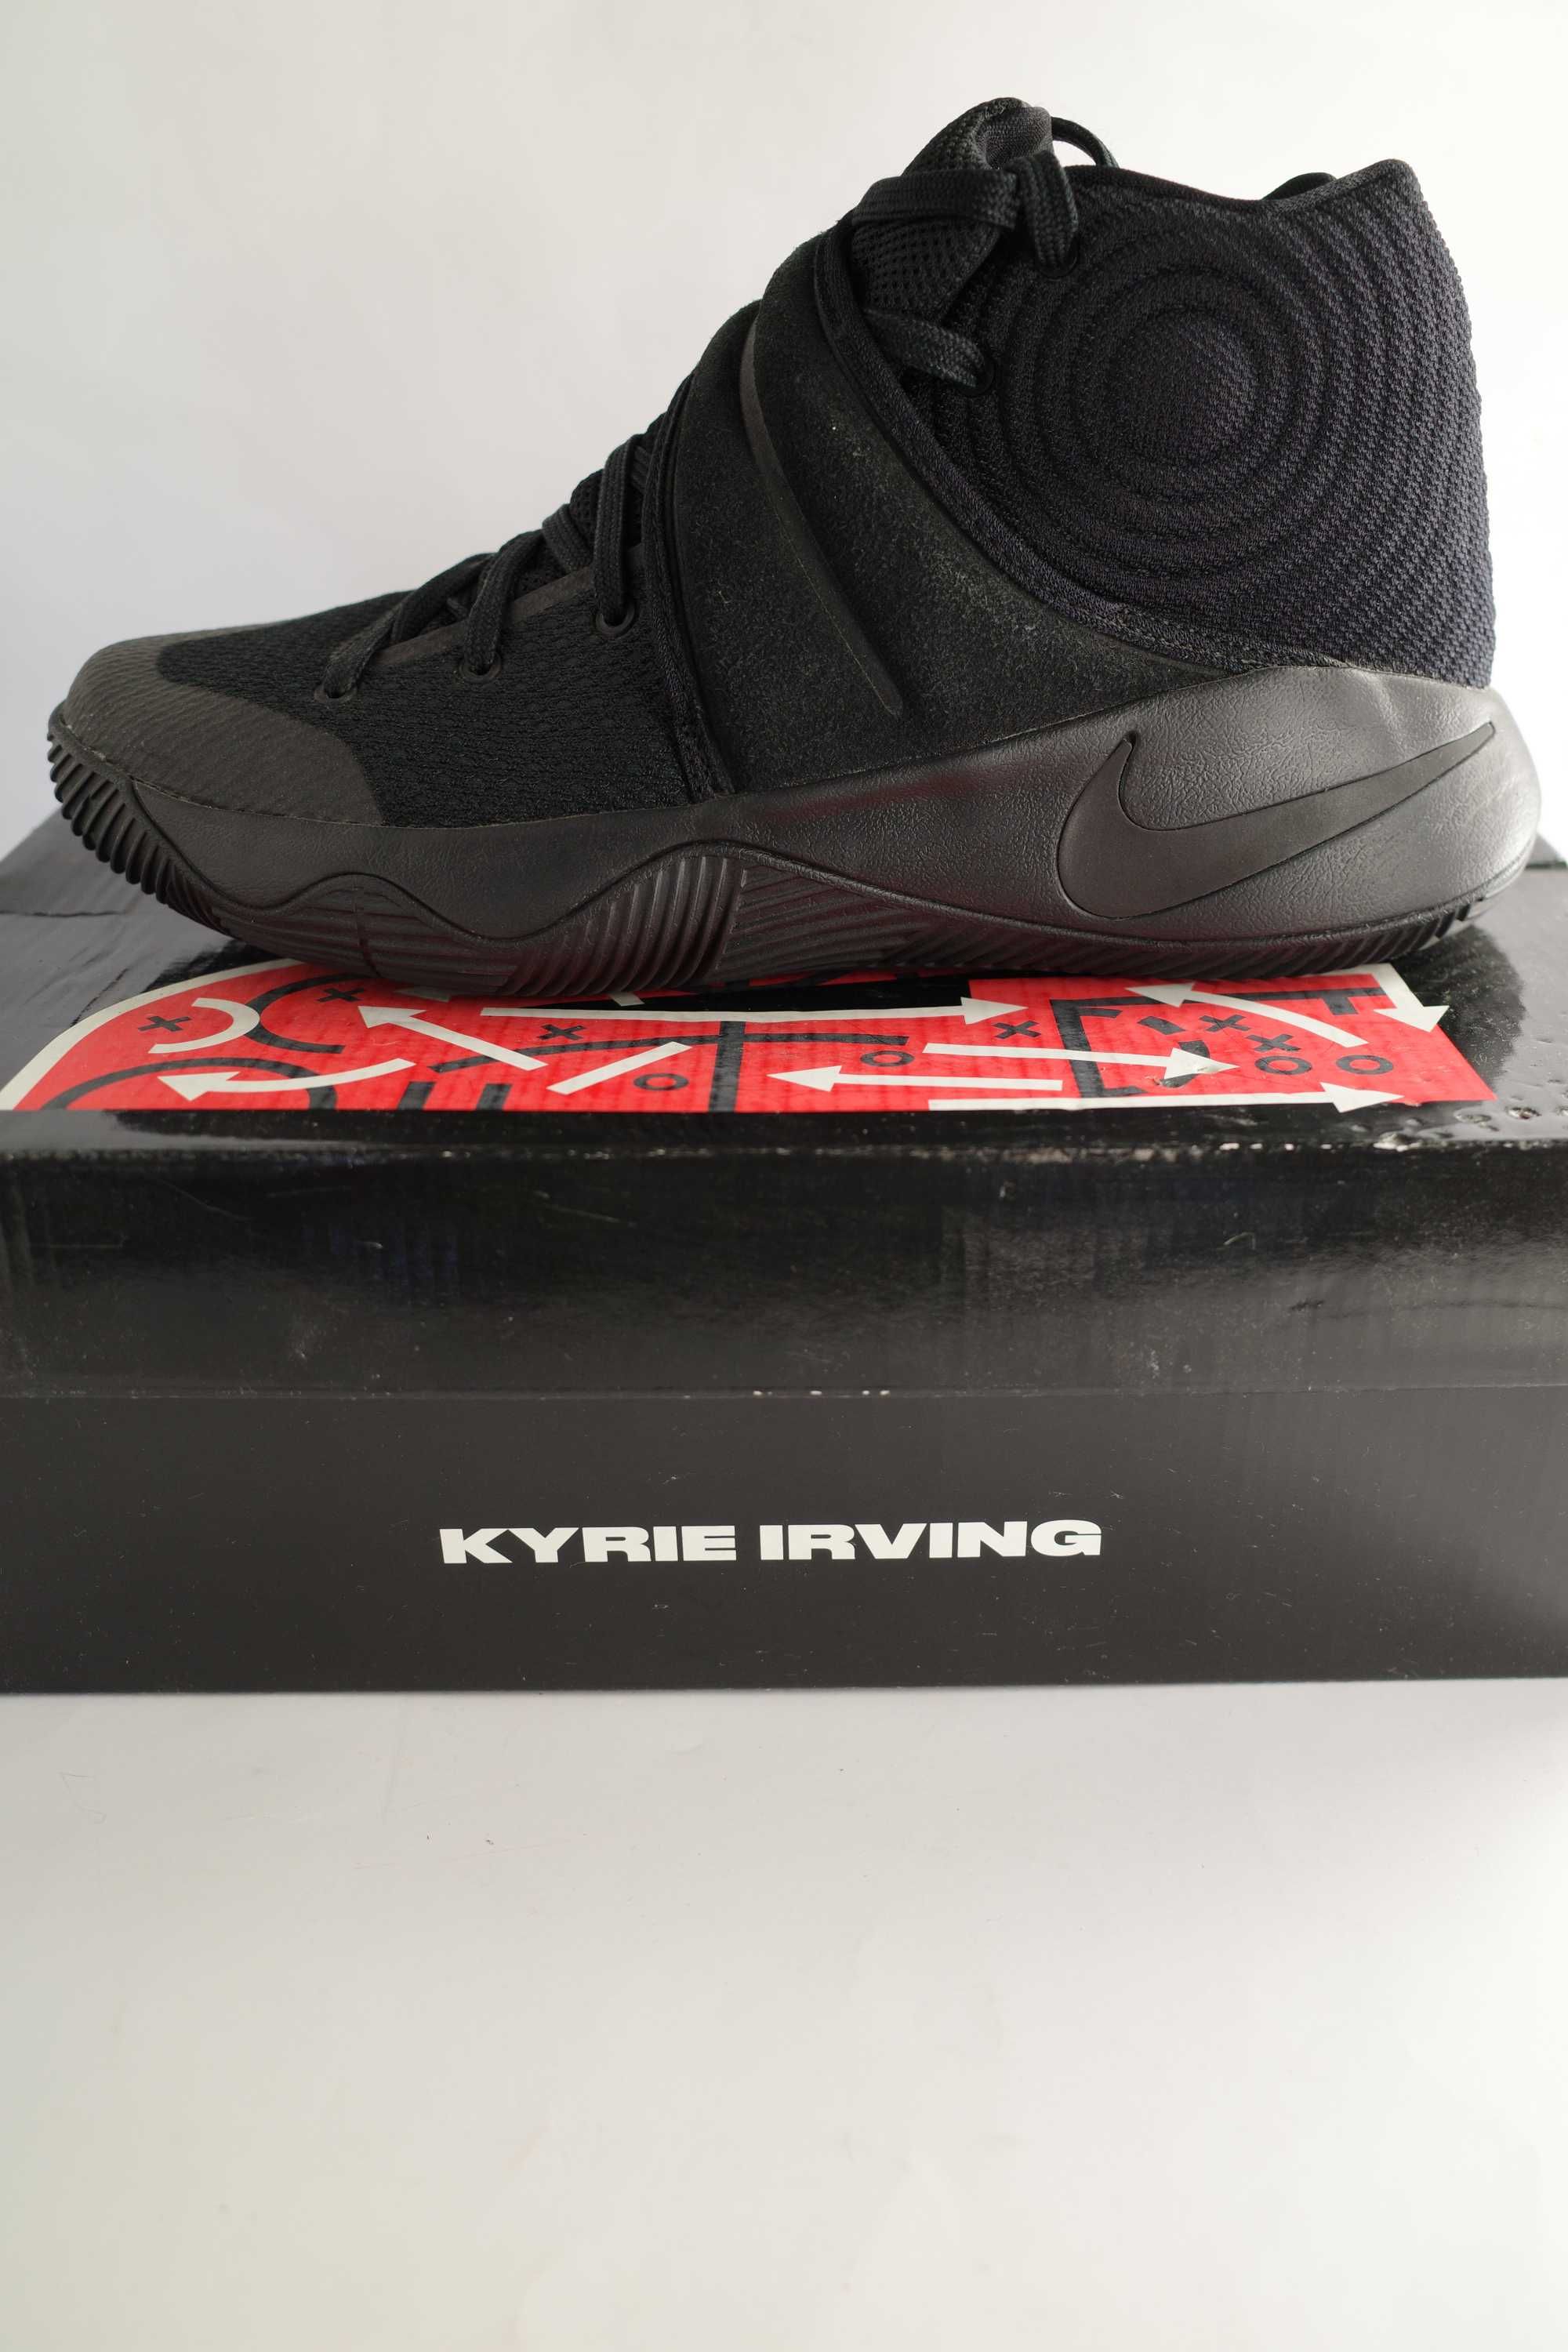 Nike Kyrie 2, tamanho 42 em ótimo estado